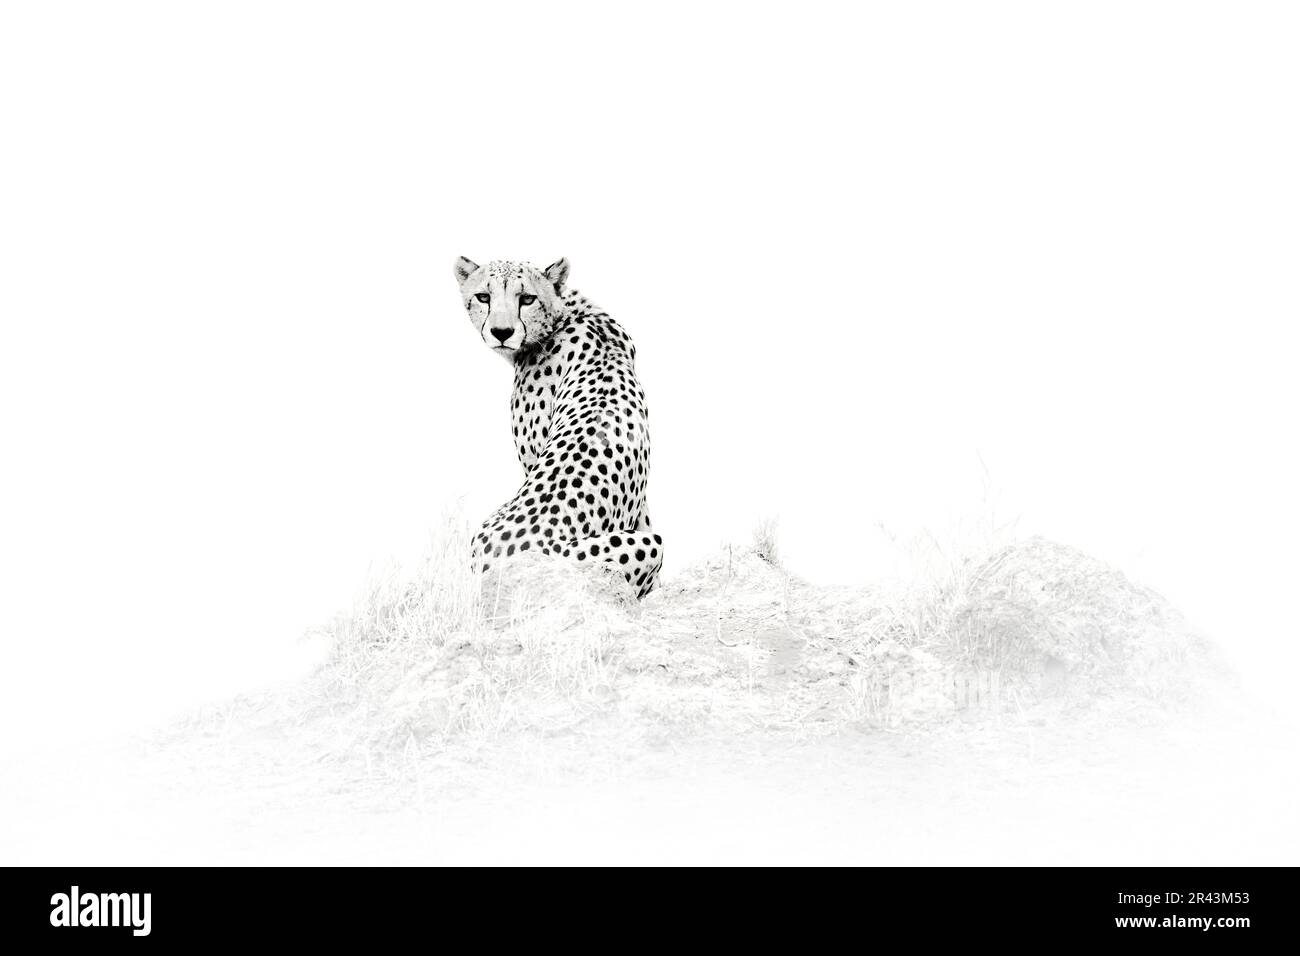 Cheetah - photo d'art noir et blanc, Savuti, Chobe NP au Botswana. Saison chaude en Afrique. Lion africain, homme La faune du Botswana. Cheetah, feu brûlé d Banque D'Images